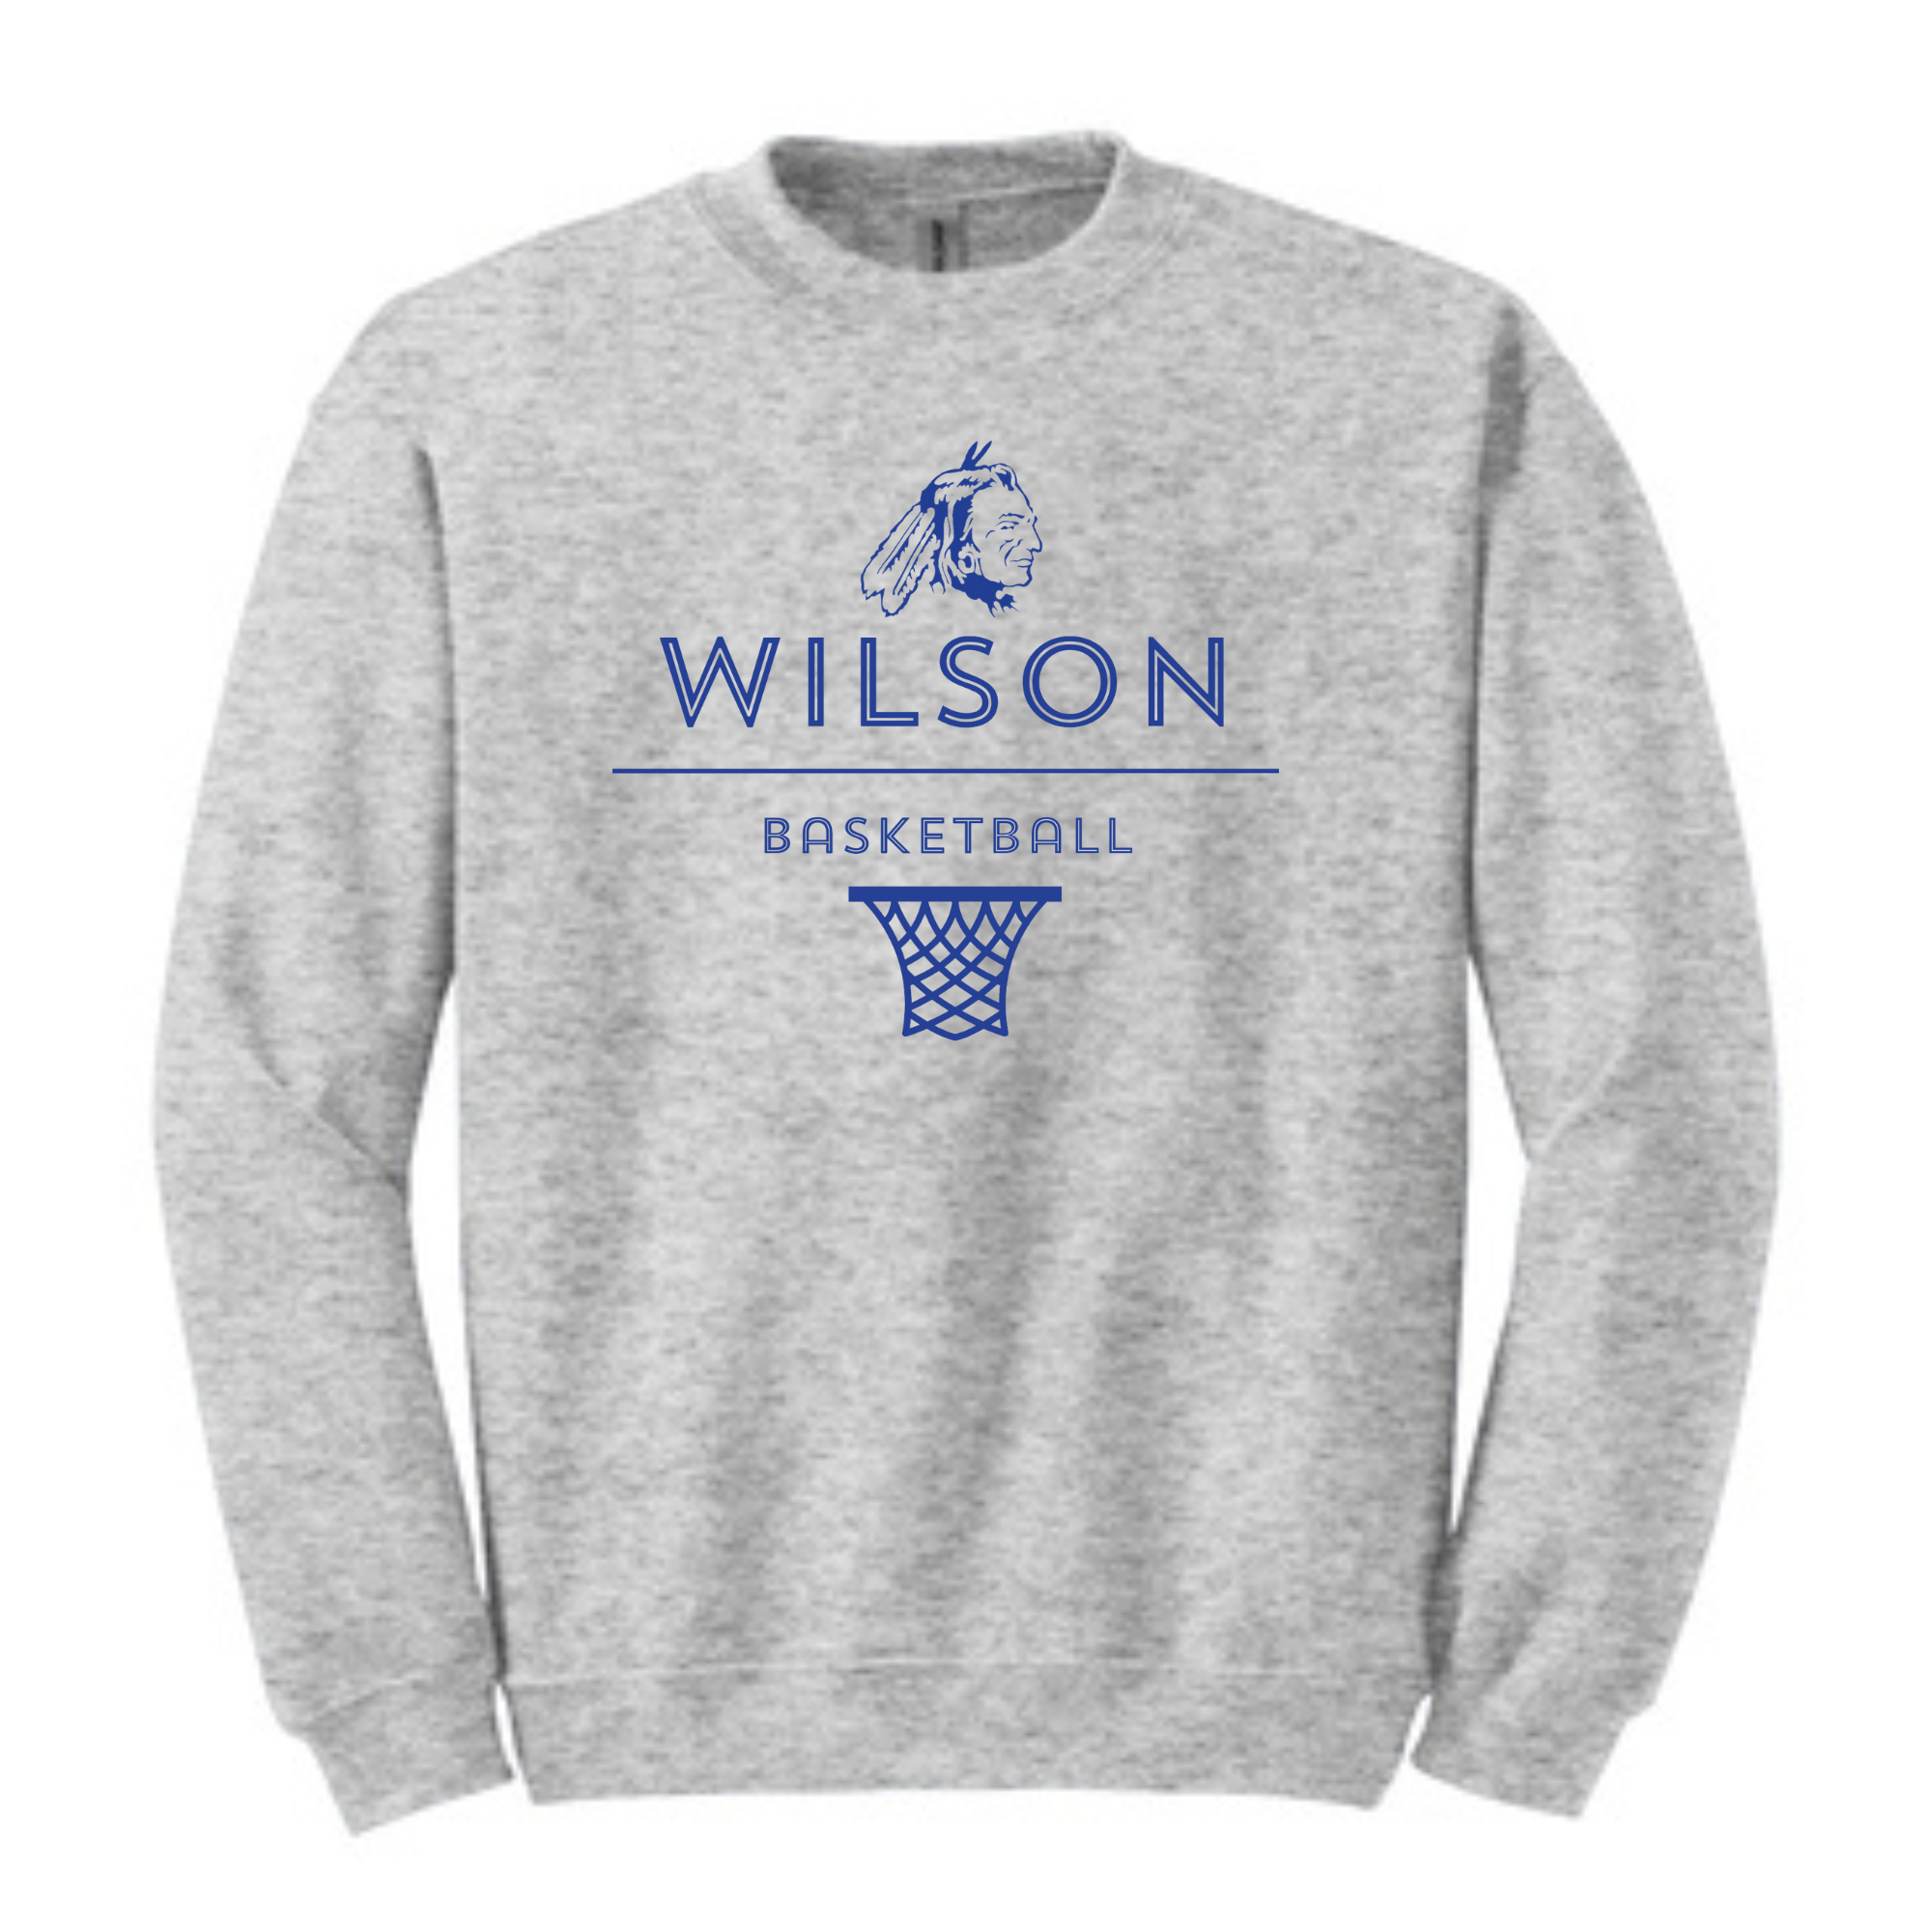 Wilson Basketball Crewneck Sweatshirt- 18000